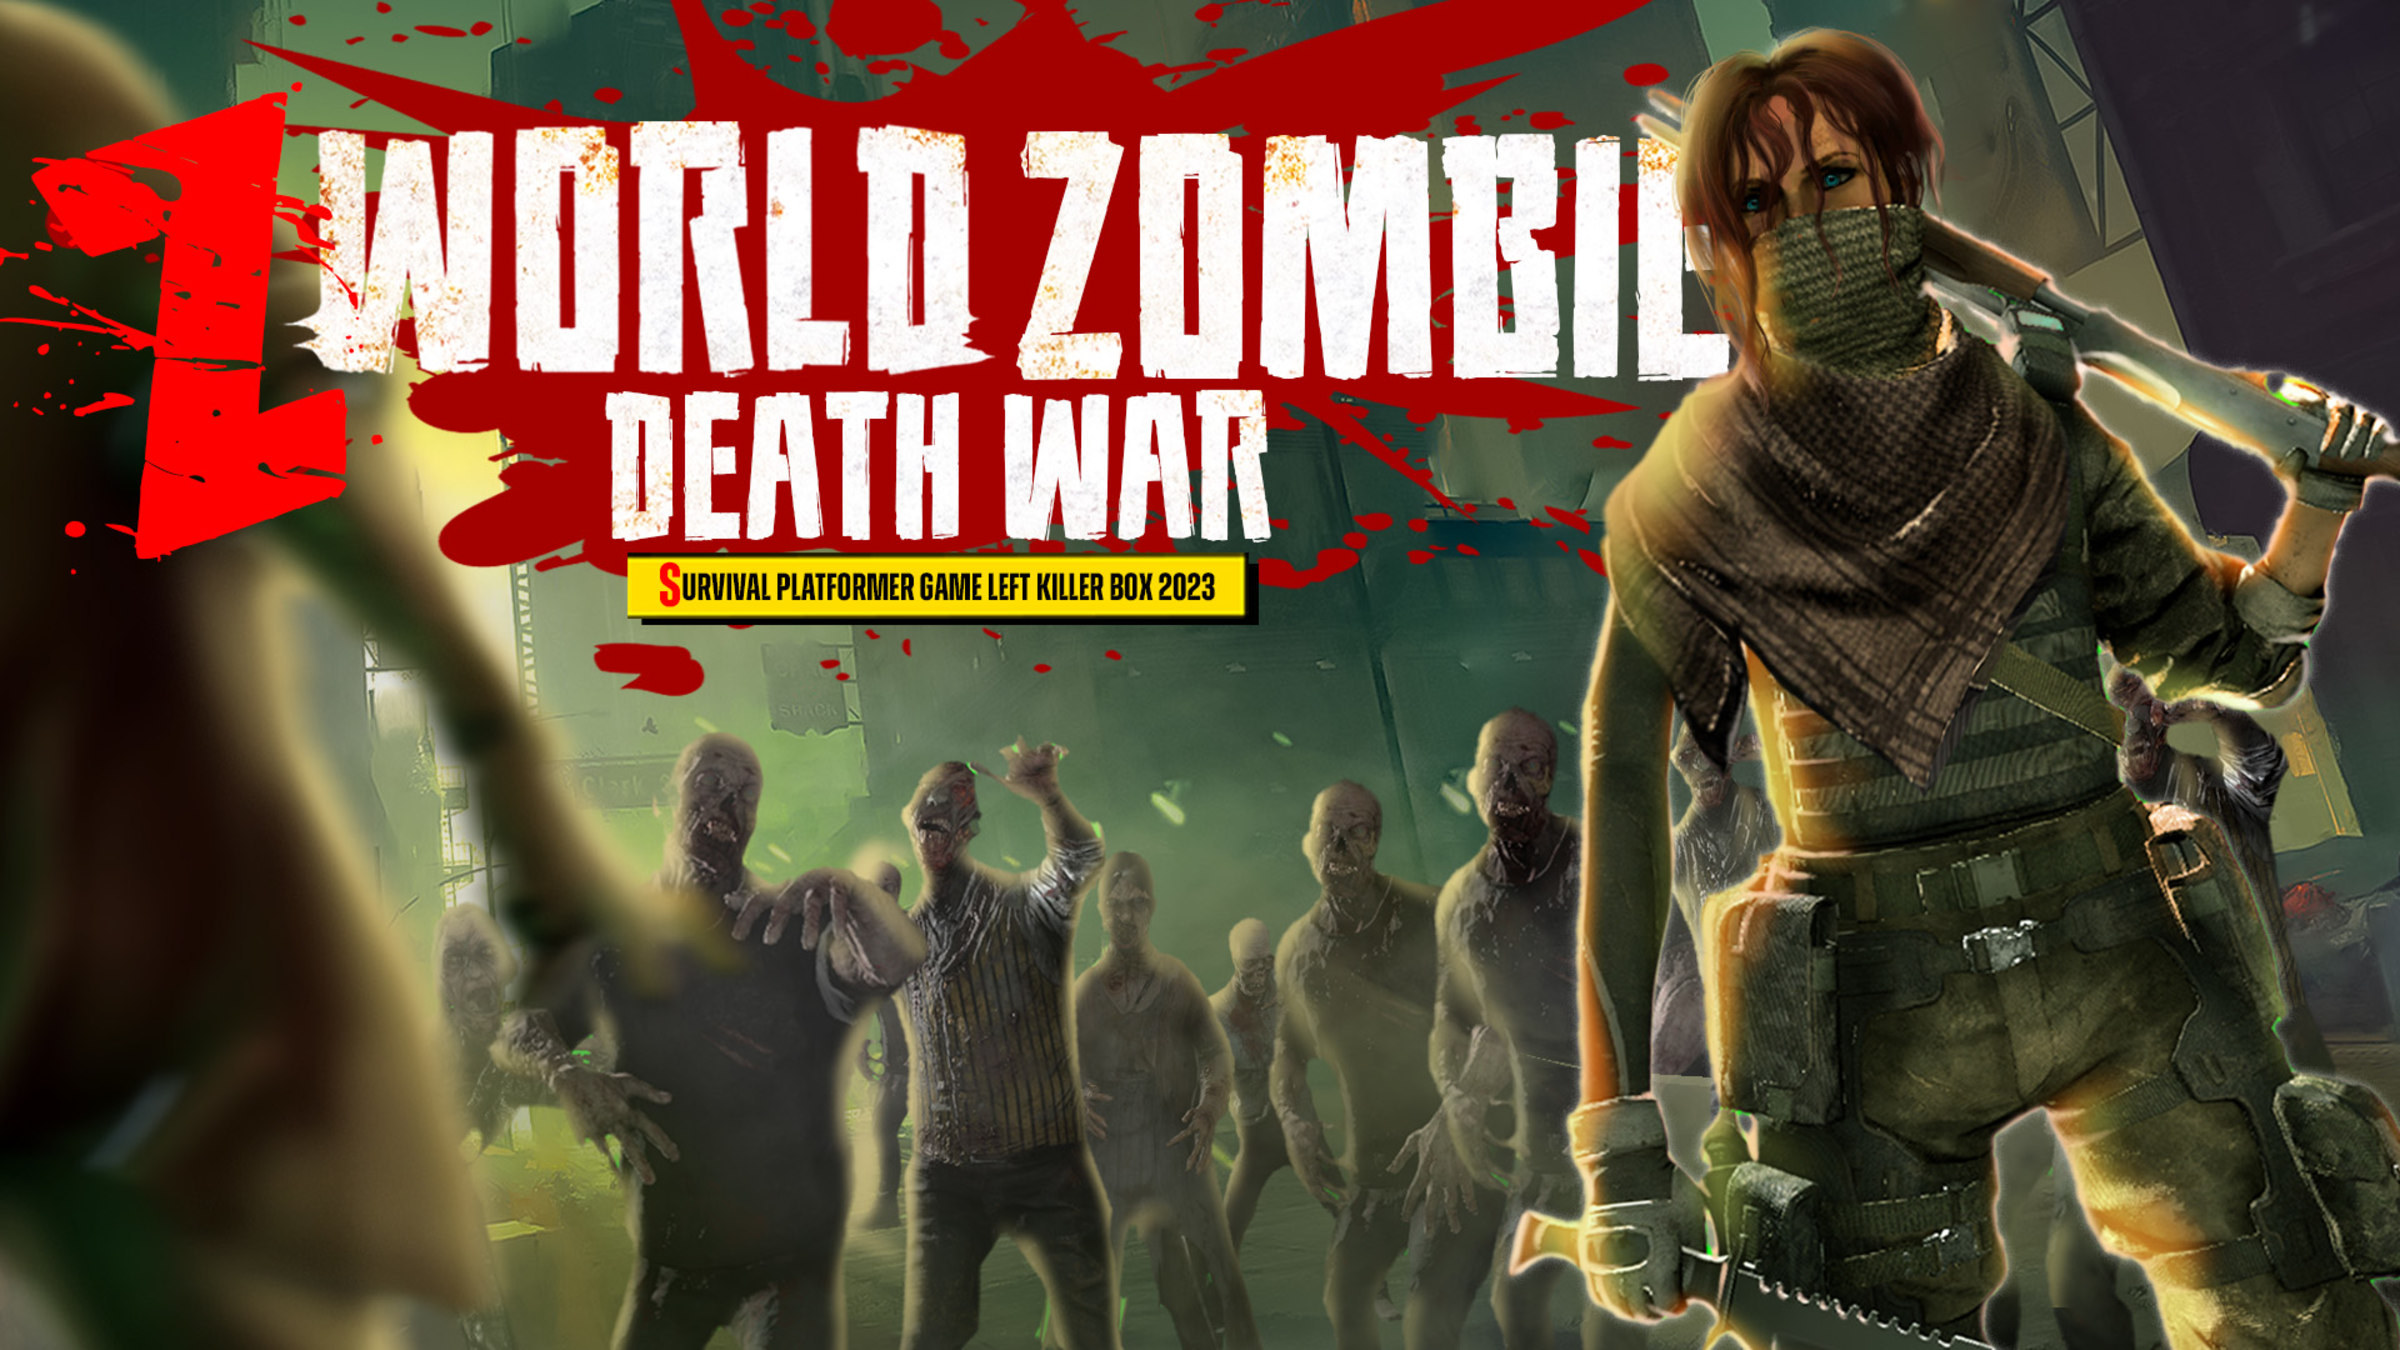 Jogo em Flash: enfrente mortos-vivos em Zombie Wars - Arkade